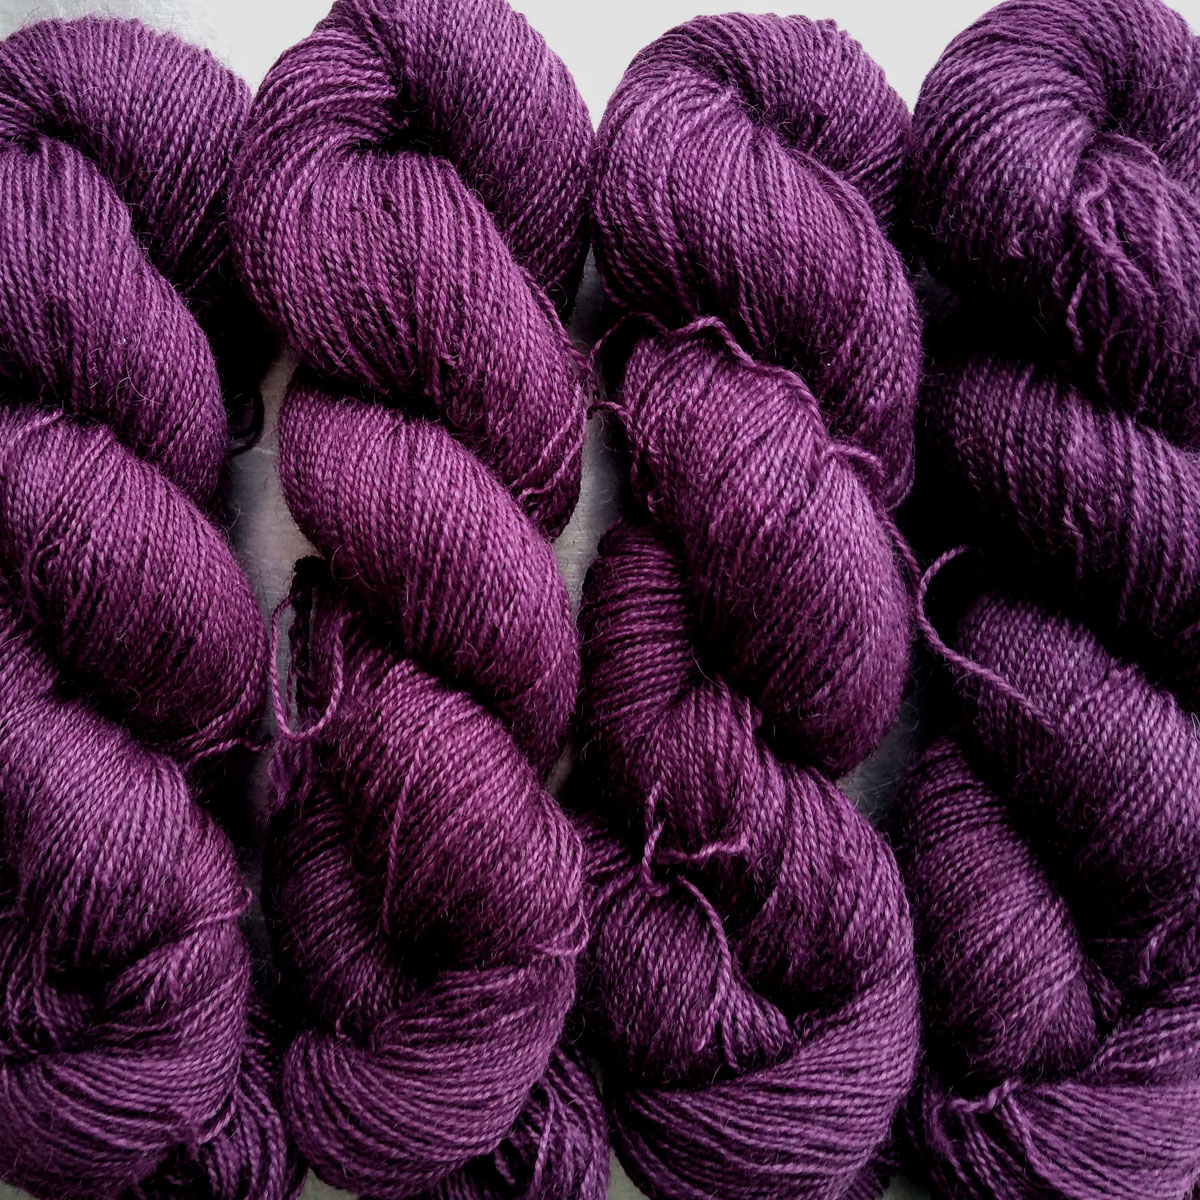 download tyrian purple dye for sale